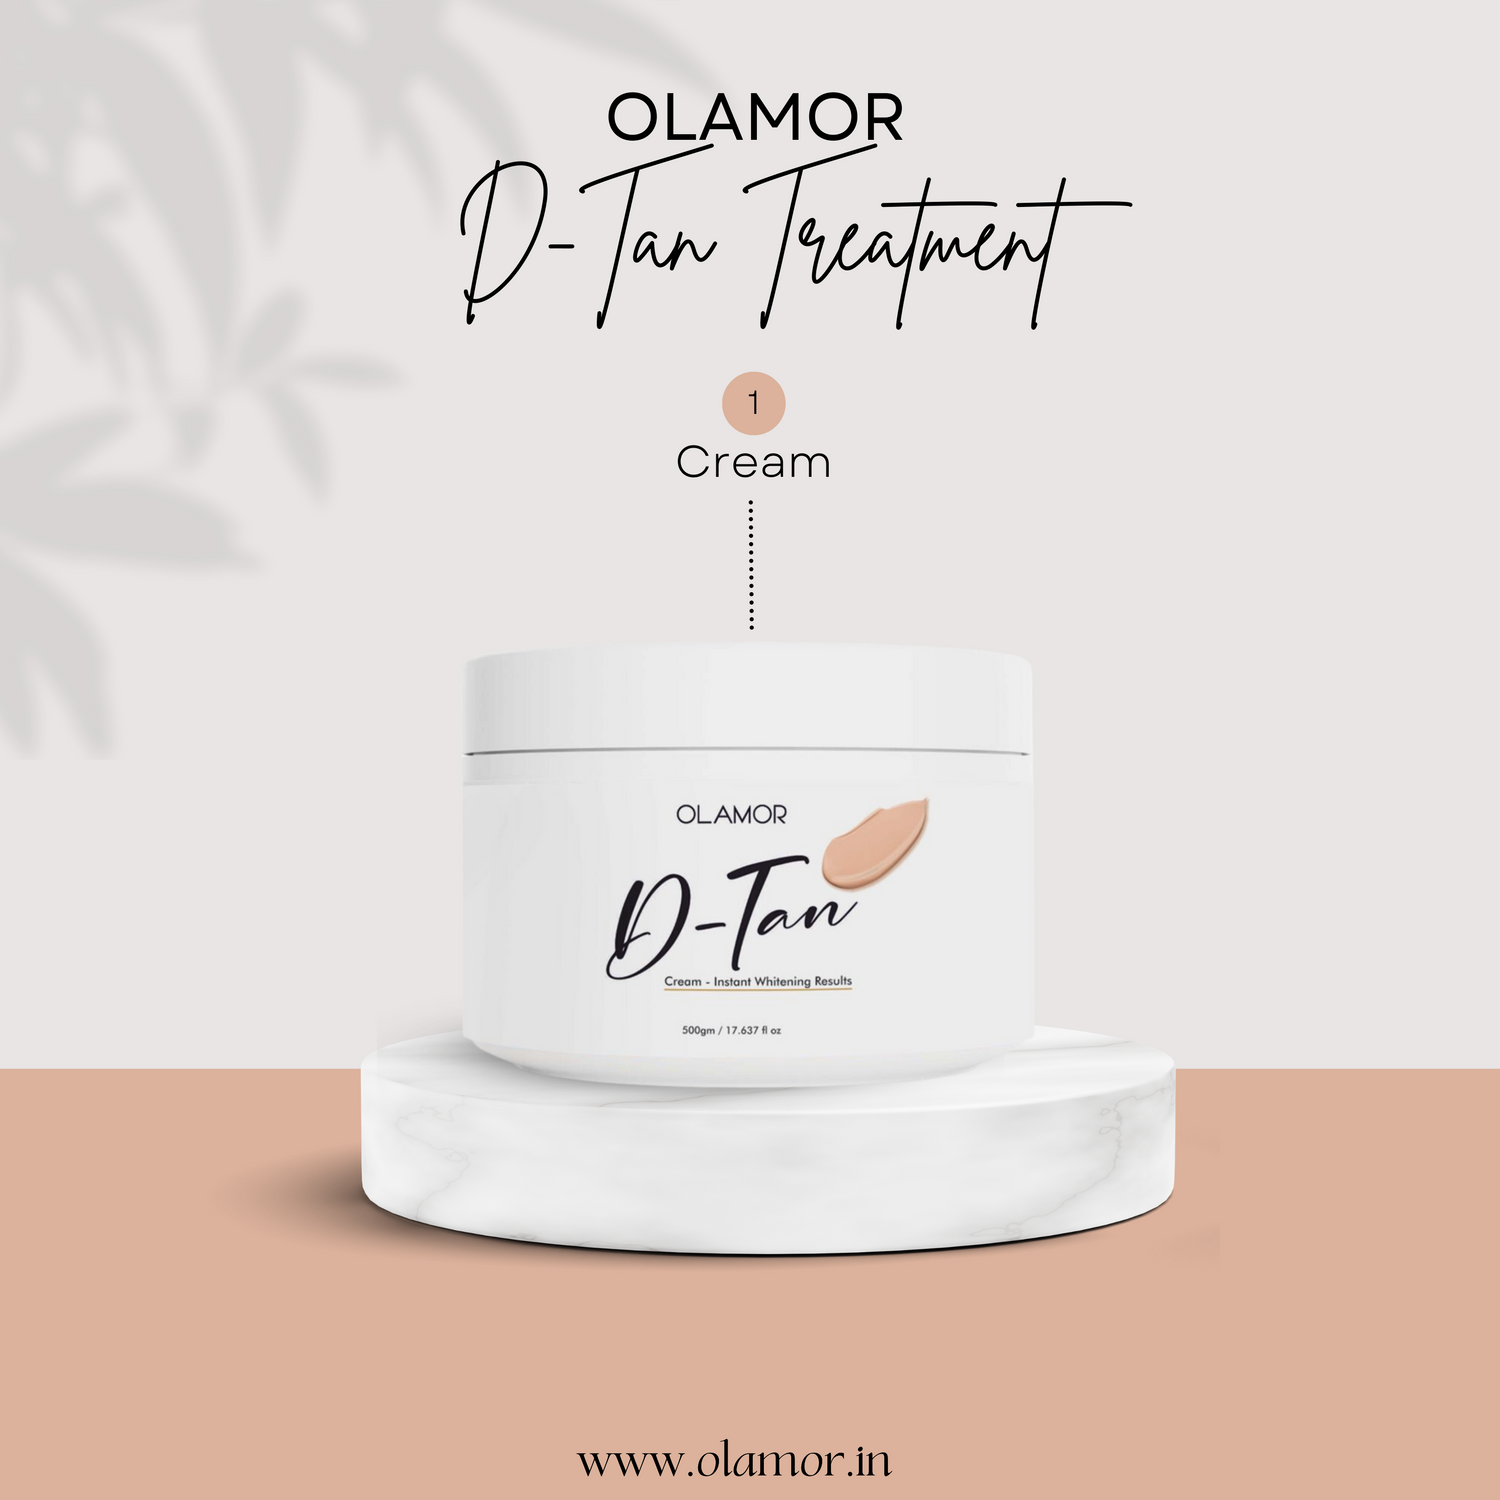 Olamor D-tan treatment Cream